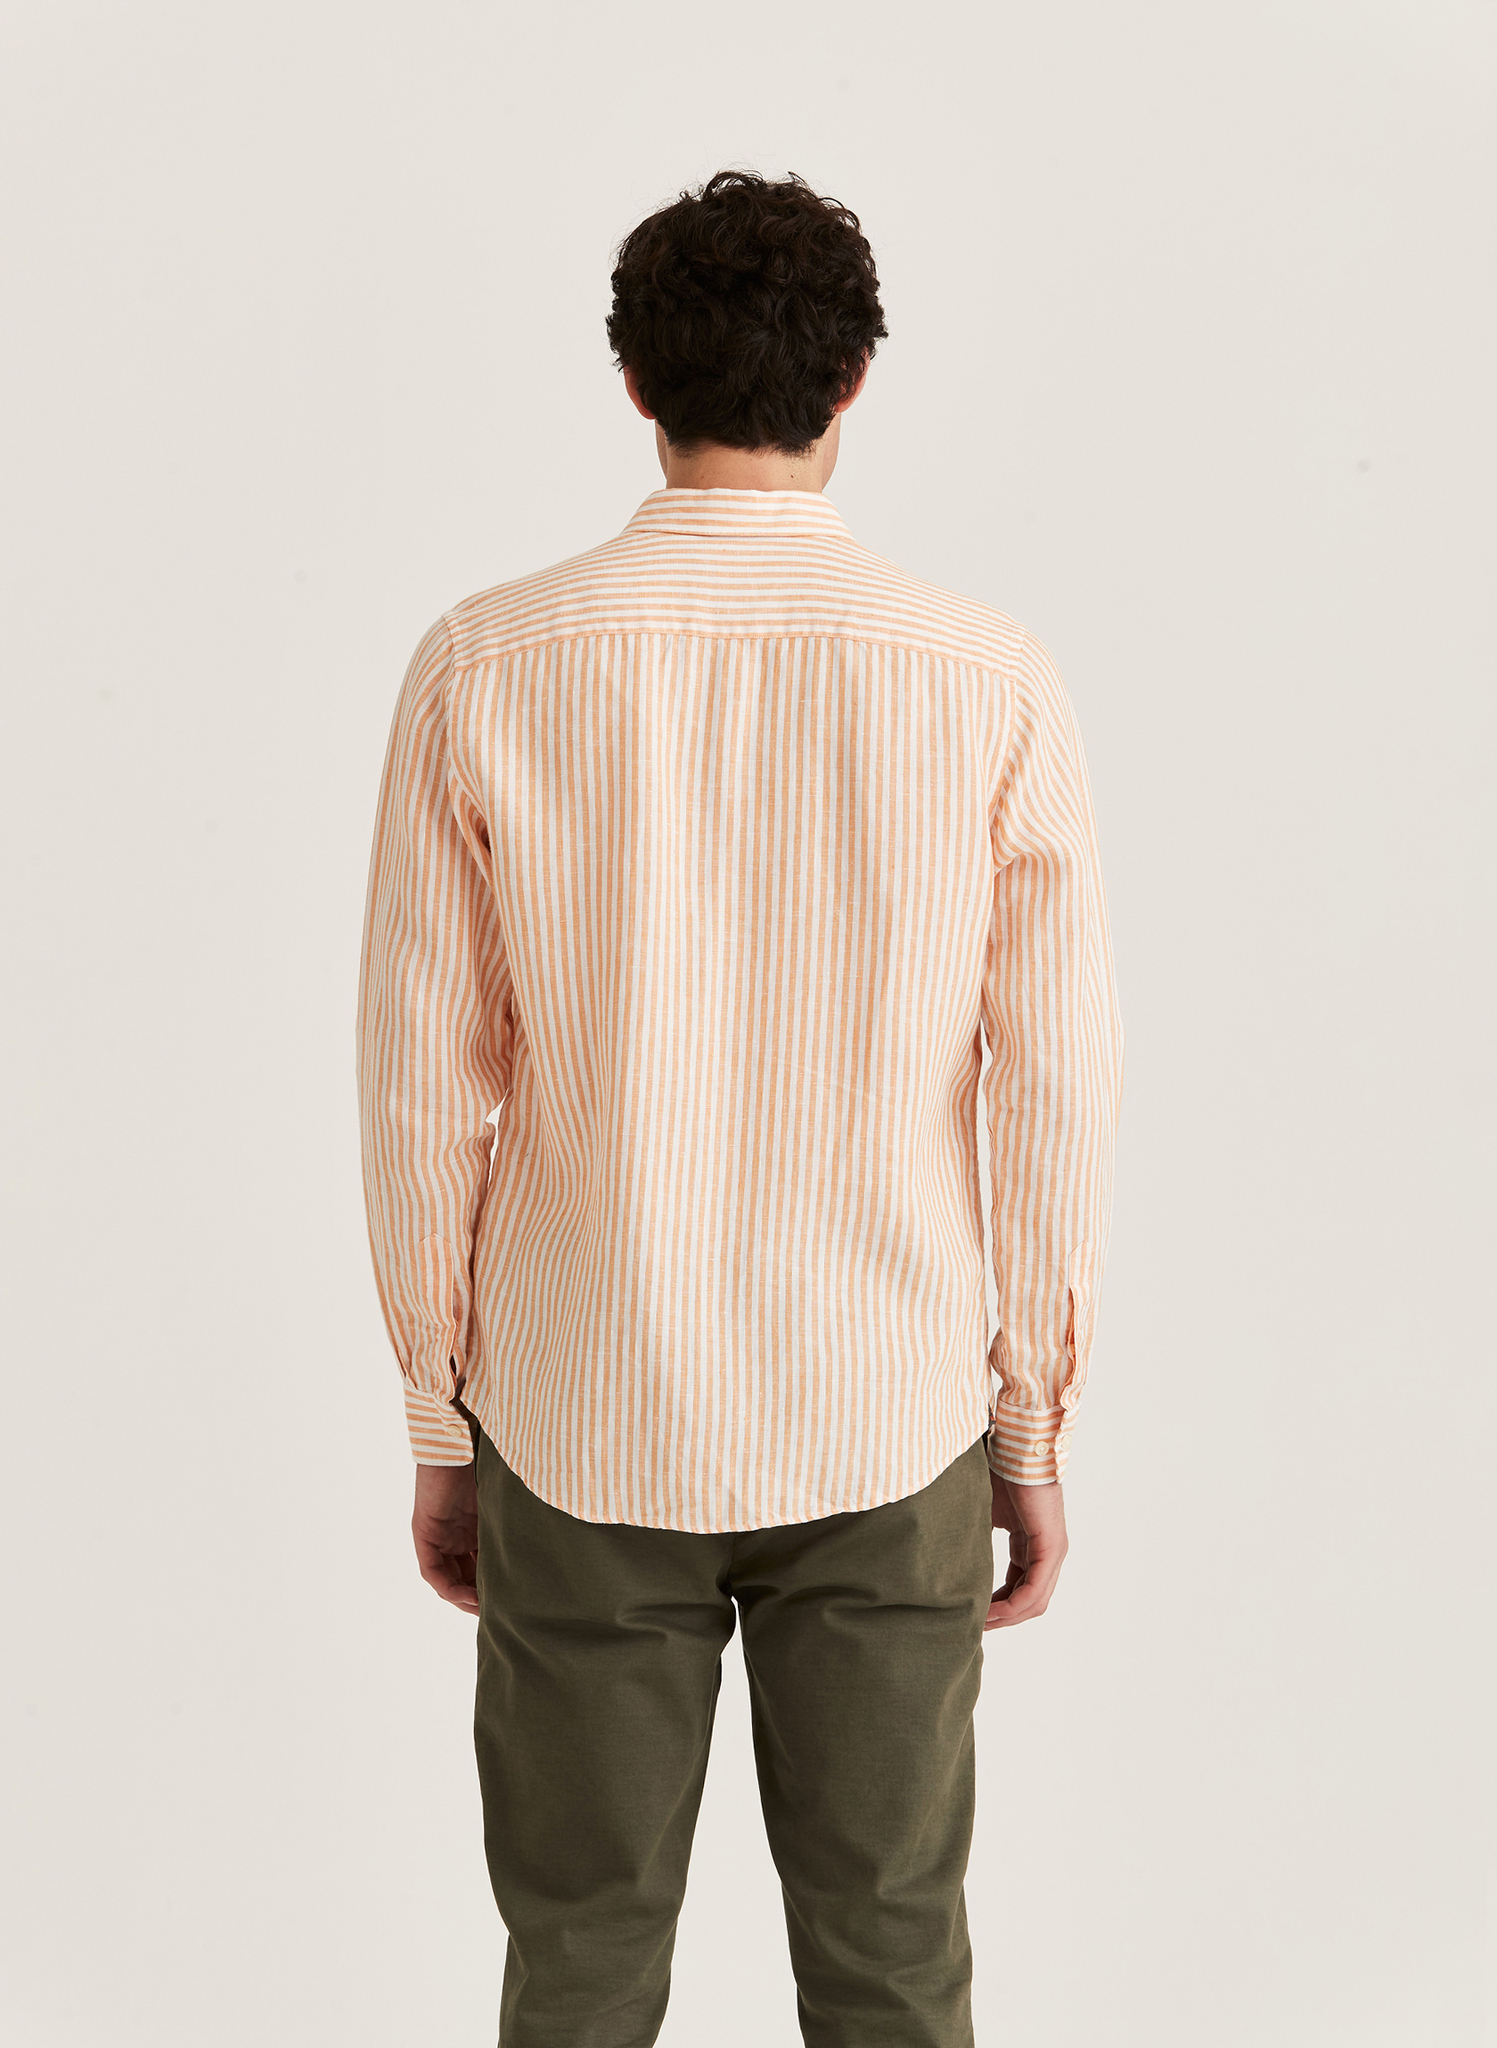 Morris - Douglas Linen Stripe BD Shirt